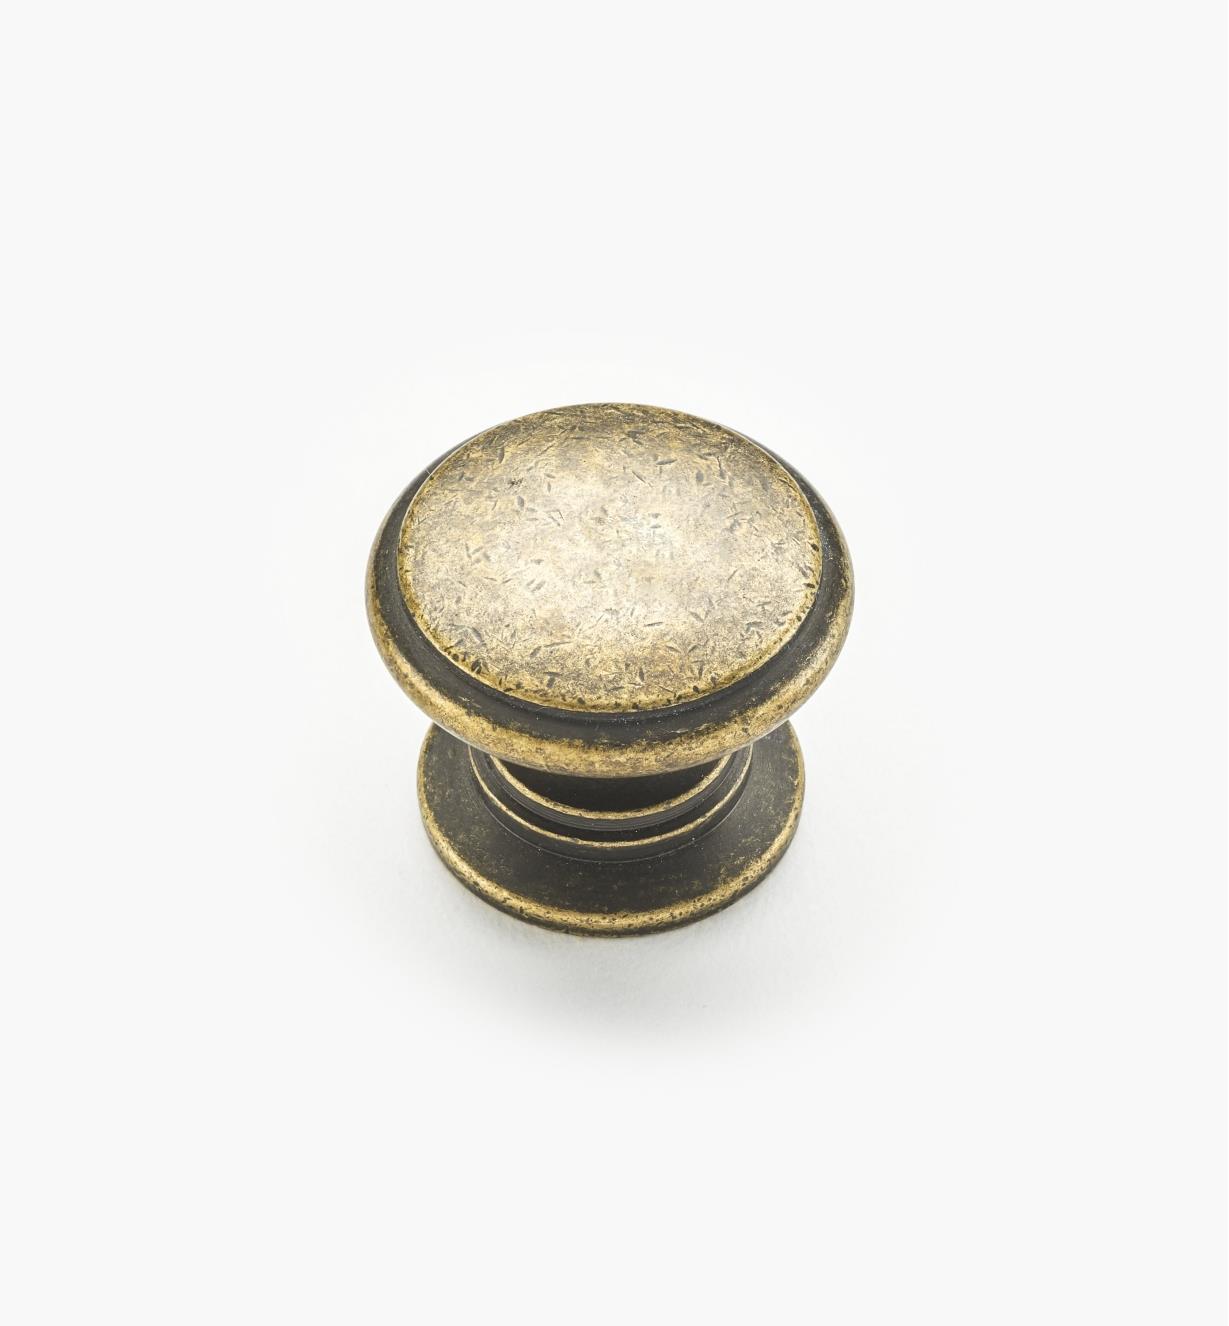 02W1241 - 1 1/4" x 1" Antique Brass Knob